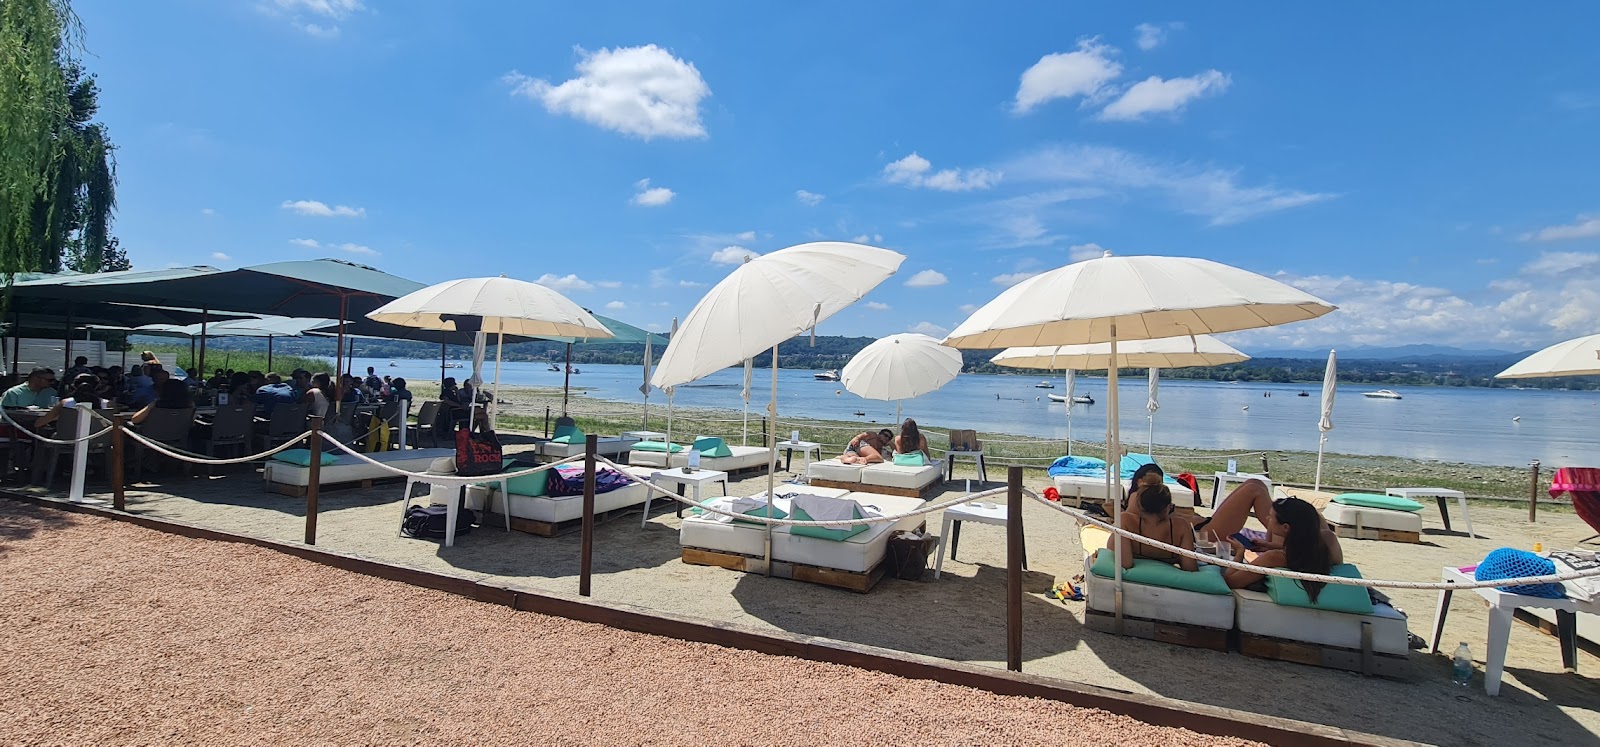 Foto av Spiaggia di Lisanza med blått vatten yta